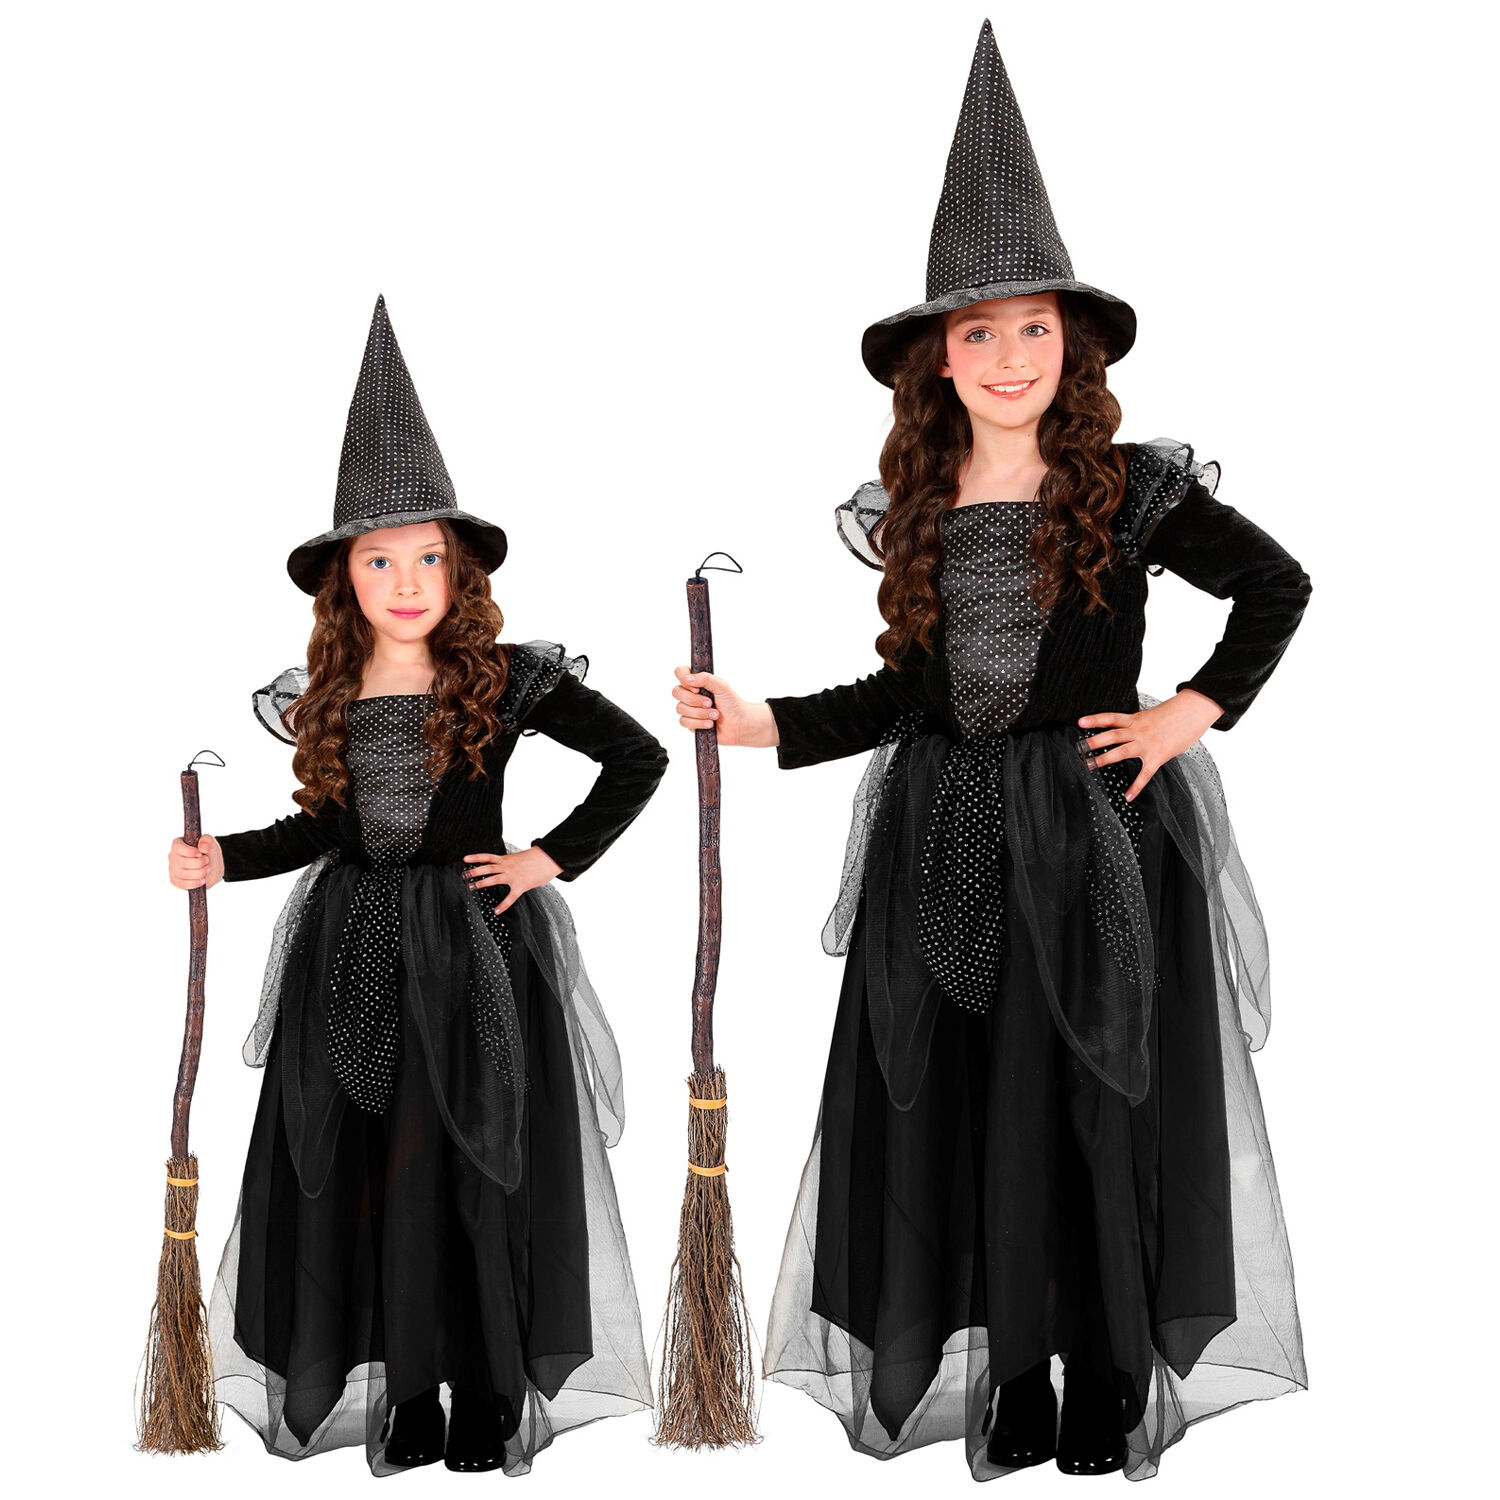 NEU Kinder-Kostüm Hexe, Kleid mit Hexenhut, schwarz - verschiedene Größen  (98-140) - Halloween-Kostüme & Zubehör Kinder Halloween Produkte